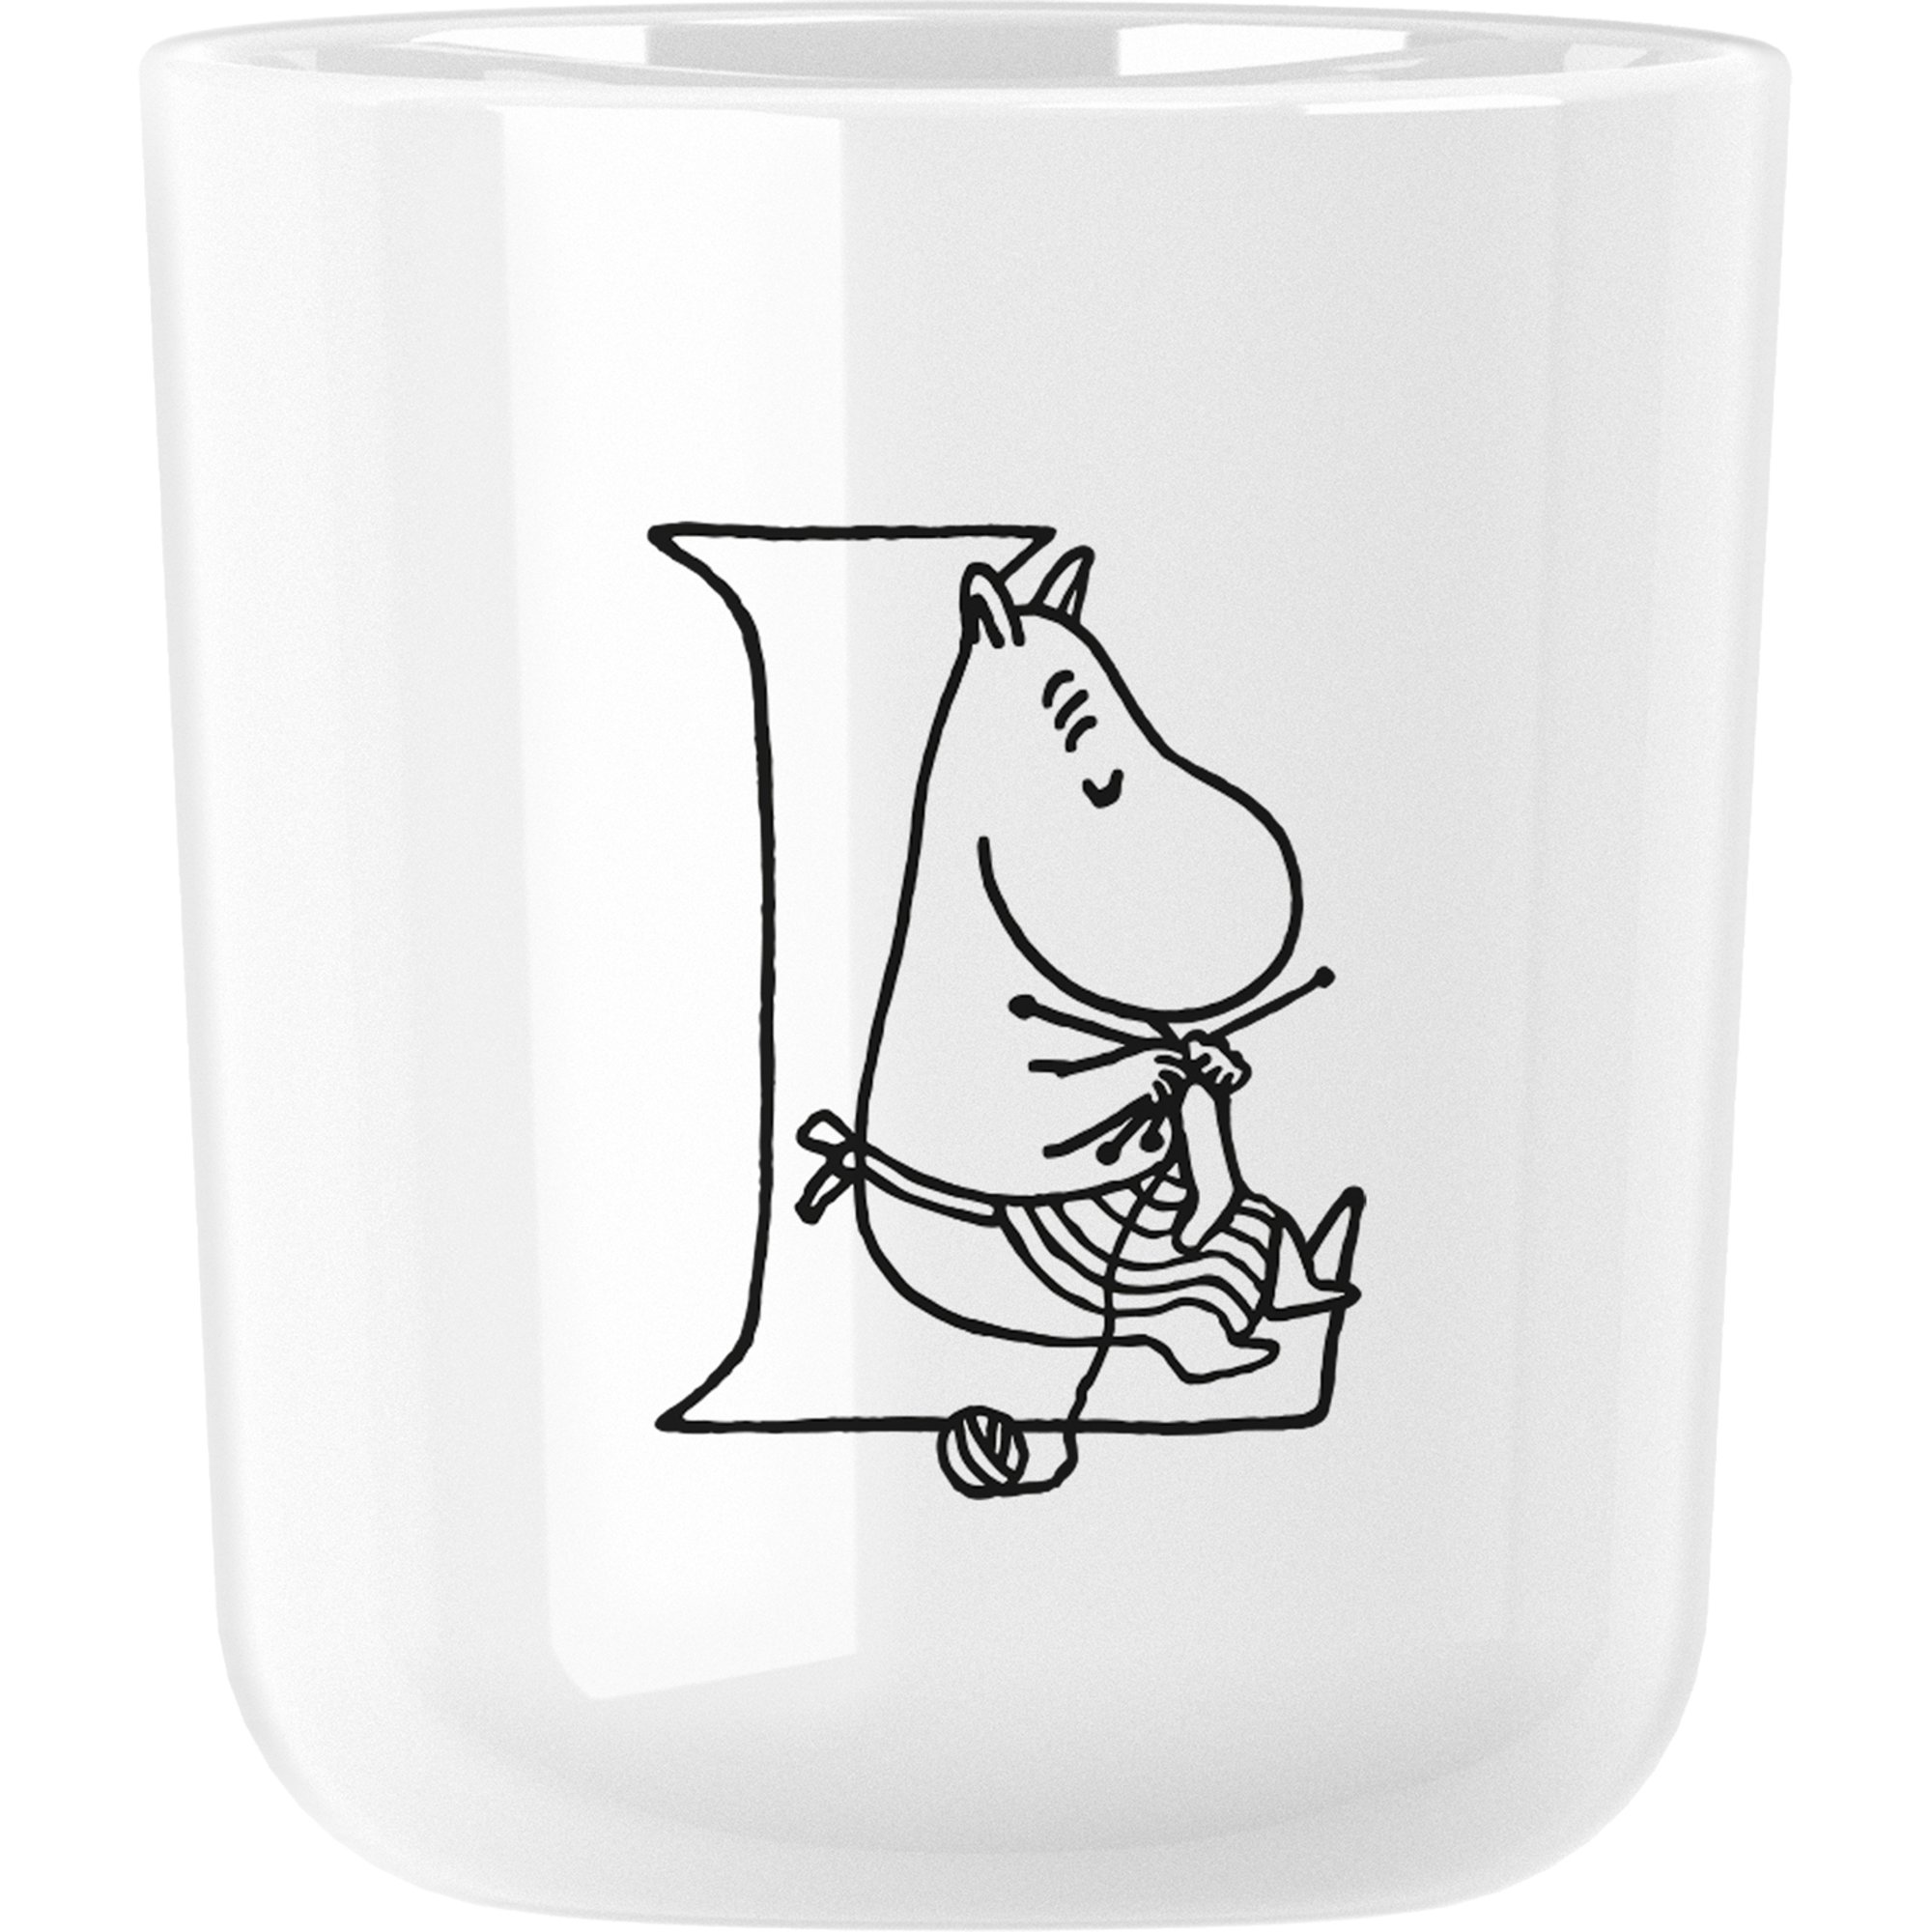 RIG-TIG Moomin ABC mugg 0,2 liter L